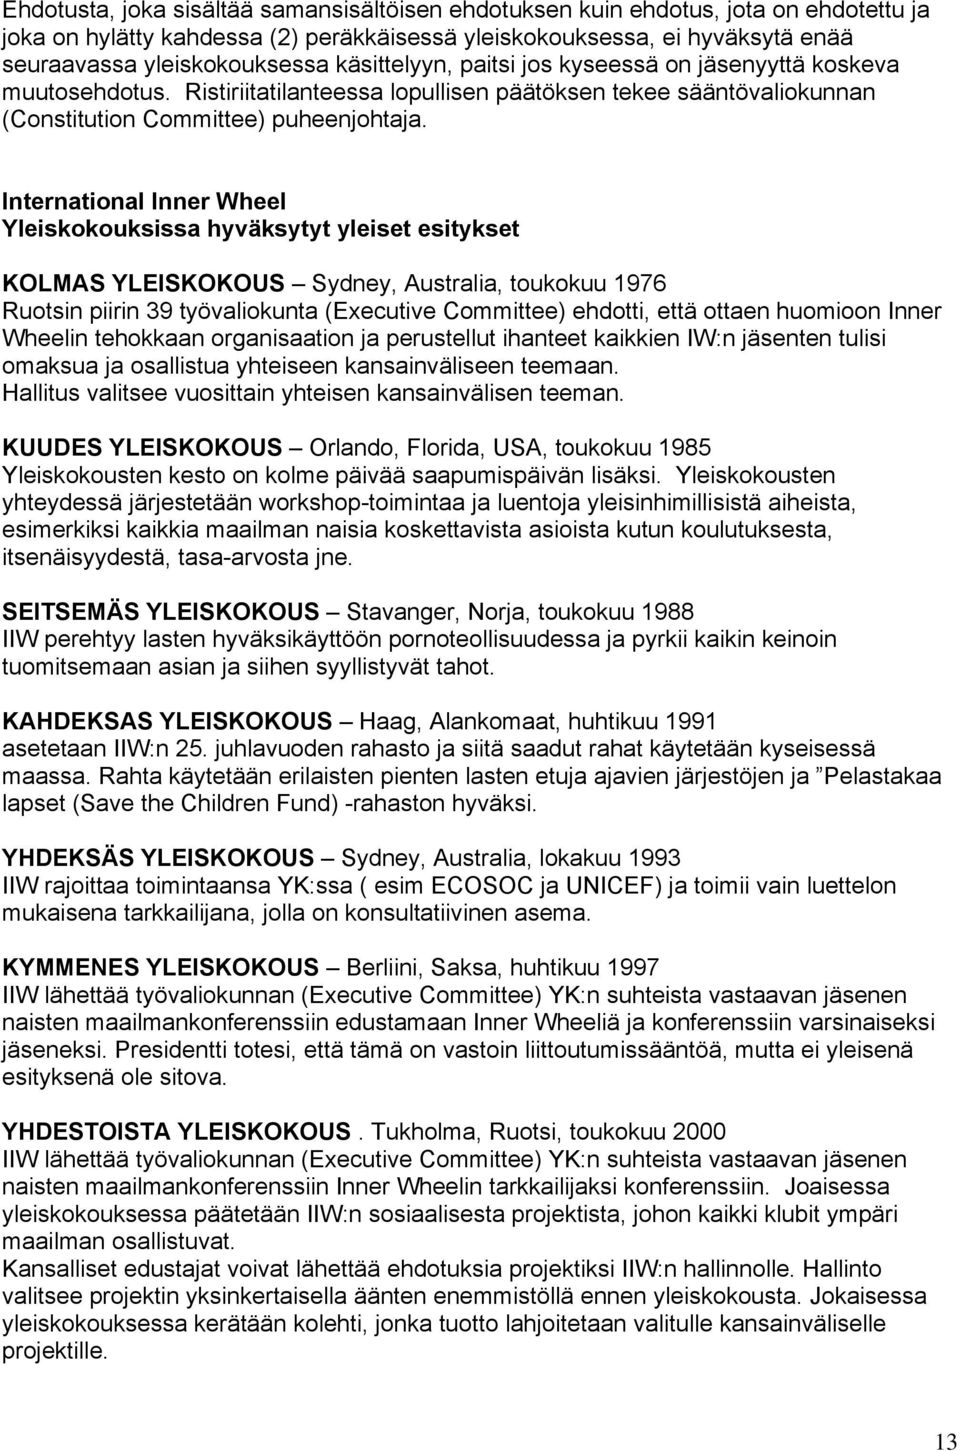 International Inner Wheel Yleiskokouksissa hyväksytyt yleiset esitykset KOLMAS YLEISKOKOUS Sydney, Australia, toukokuu 1976 Ruotsin piirin 39 työvaliokunta (Executive Committee) ehdotti, että ottaen